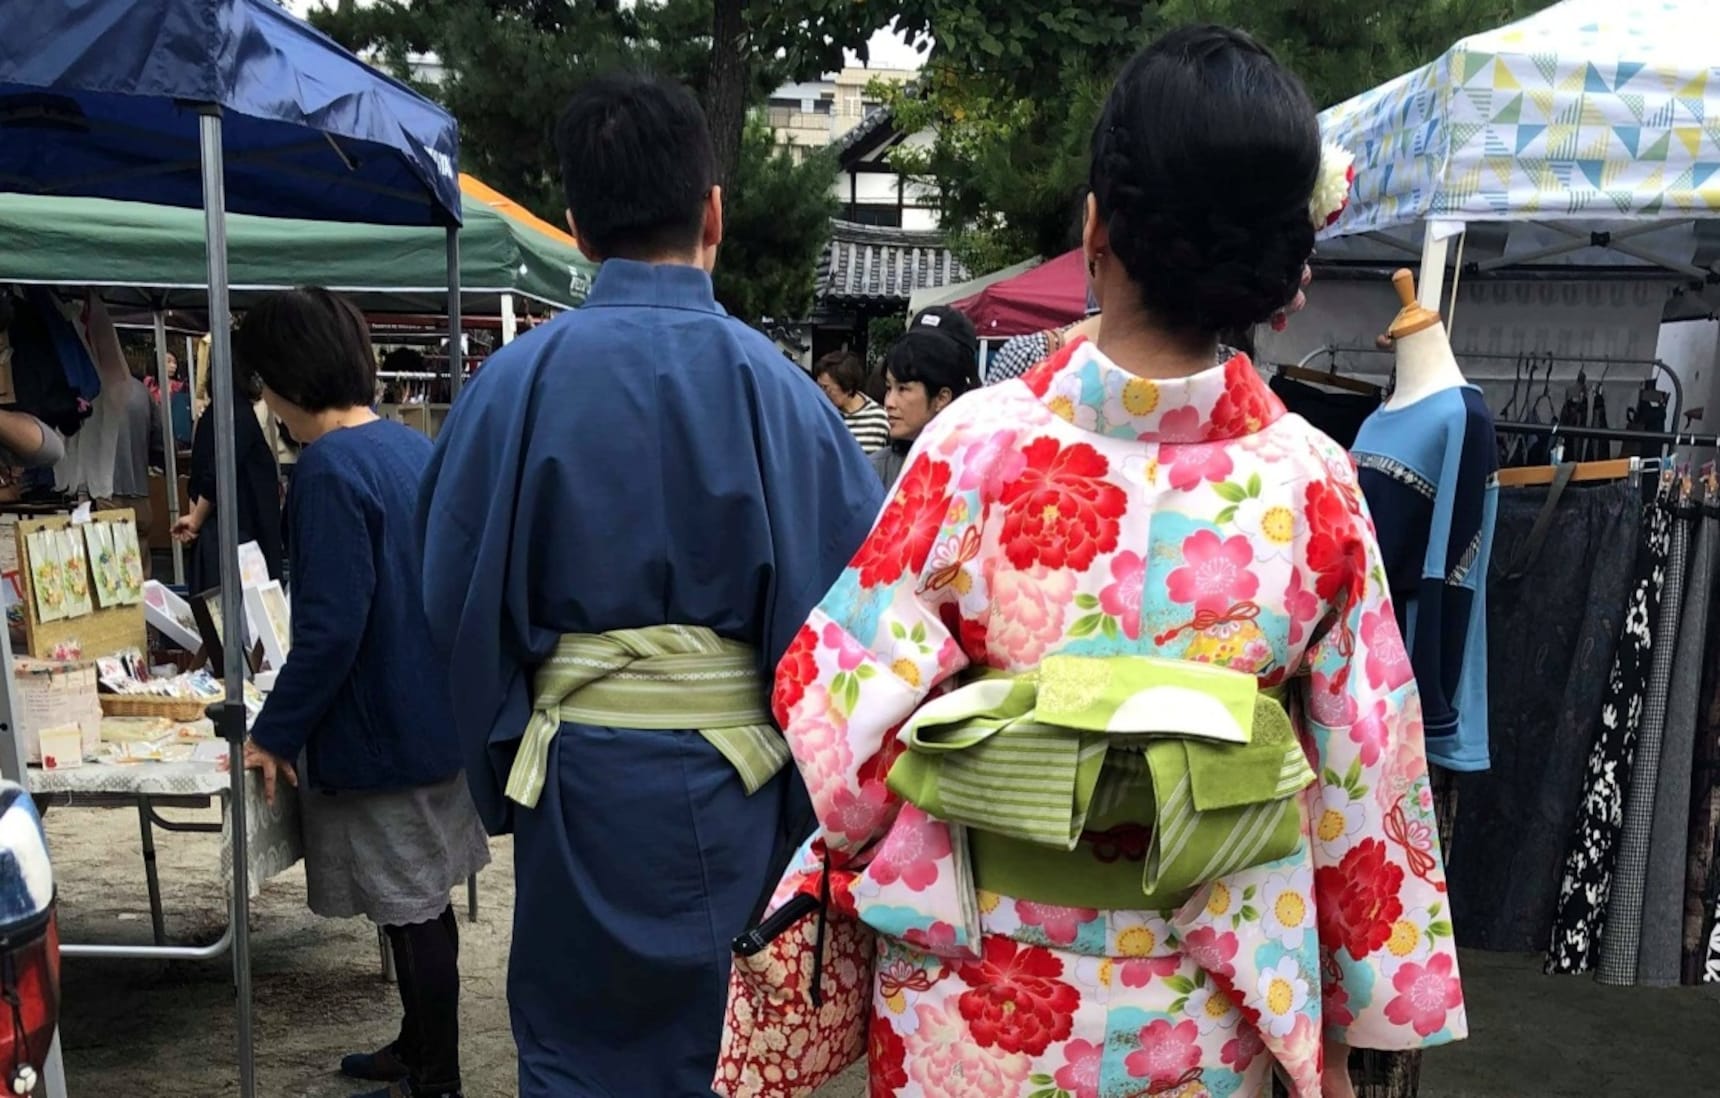 【京都自由行】在京都的手作市集 發現在地的美感生活